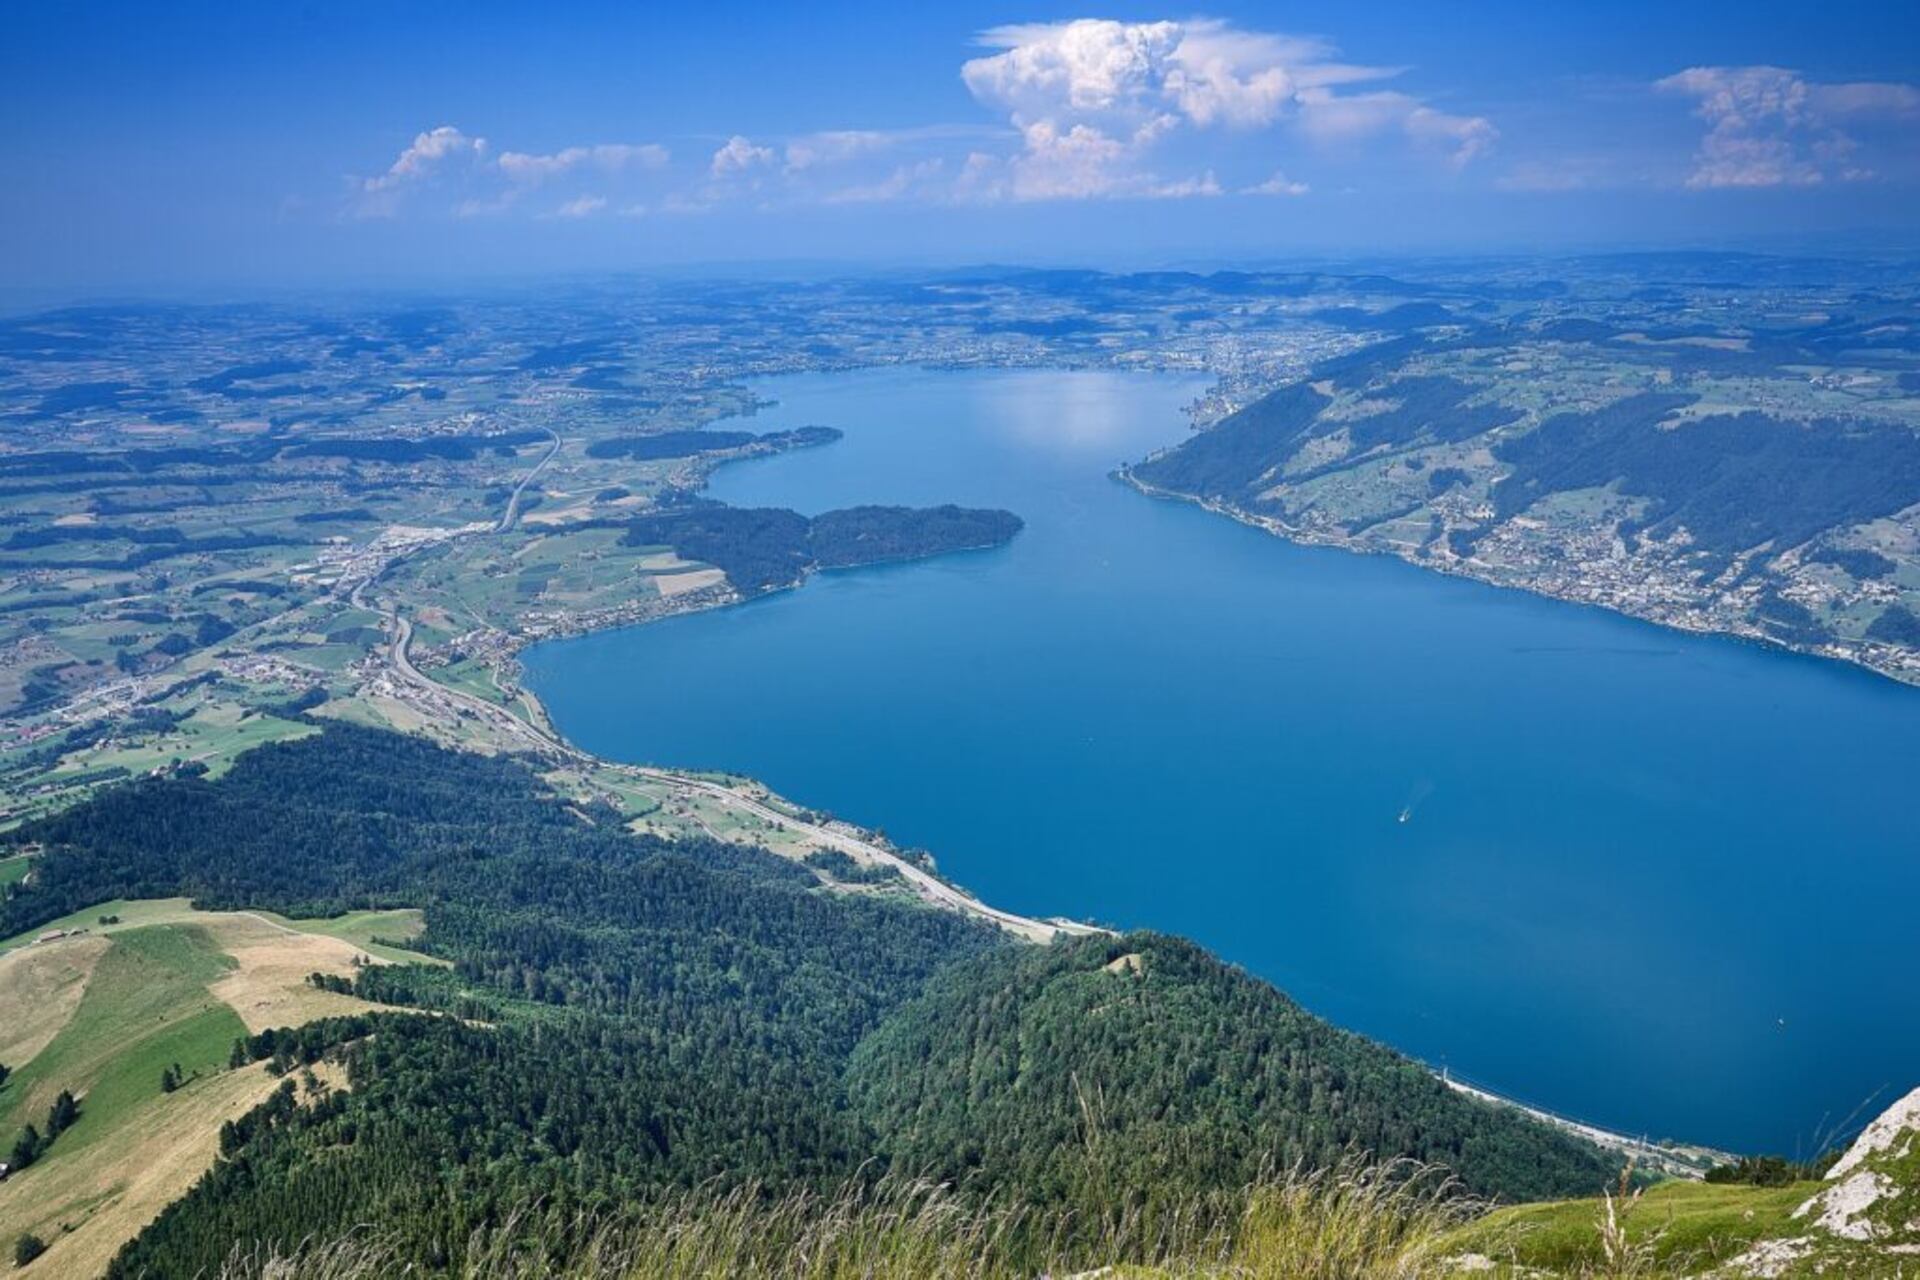 Blockchain Zug: Zugi järv: samanimeline kanton Kesk-Šveitsis on üks maailma digitaalse rahanduse pealinnu